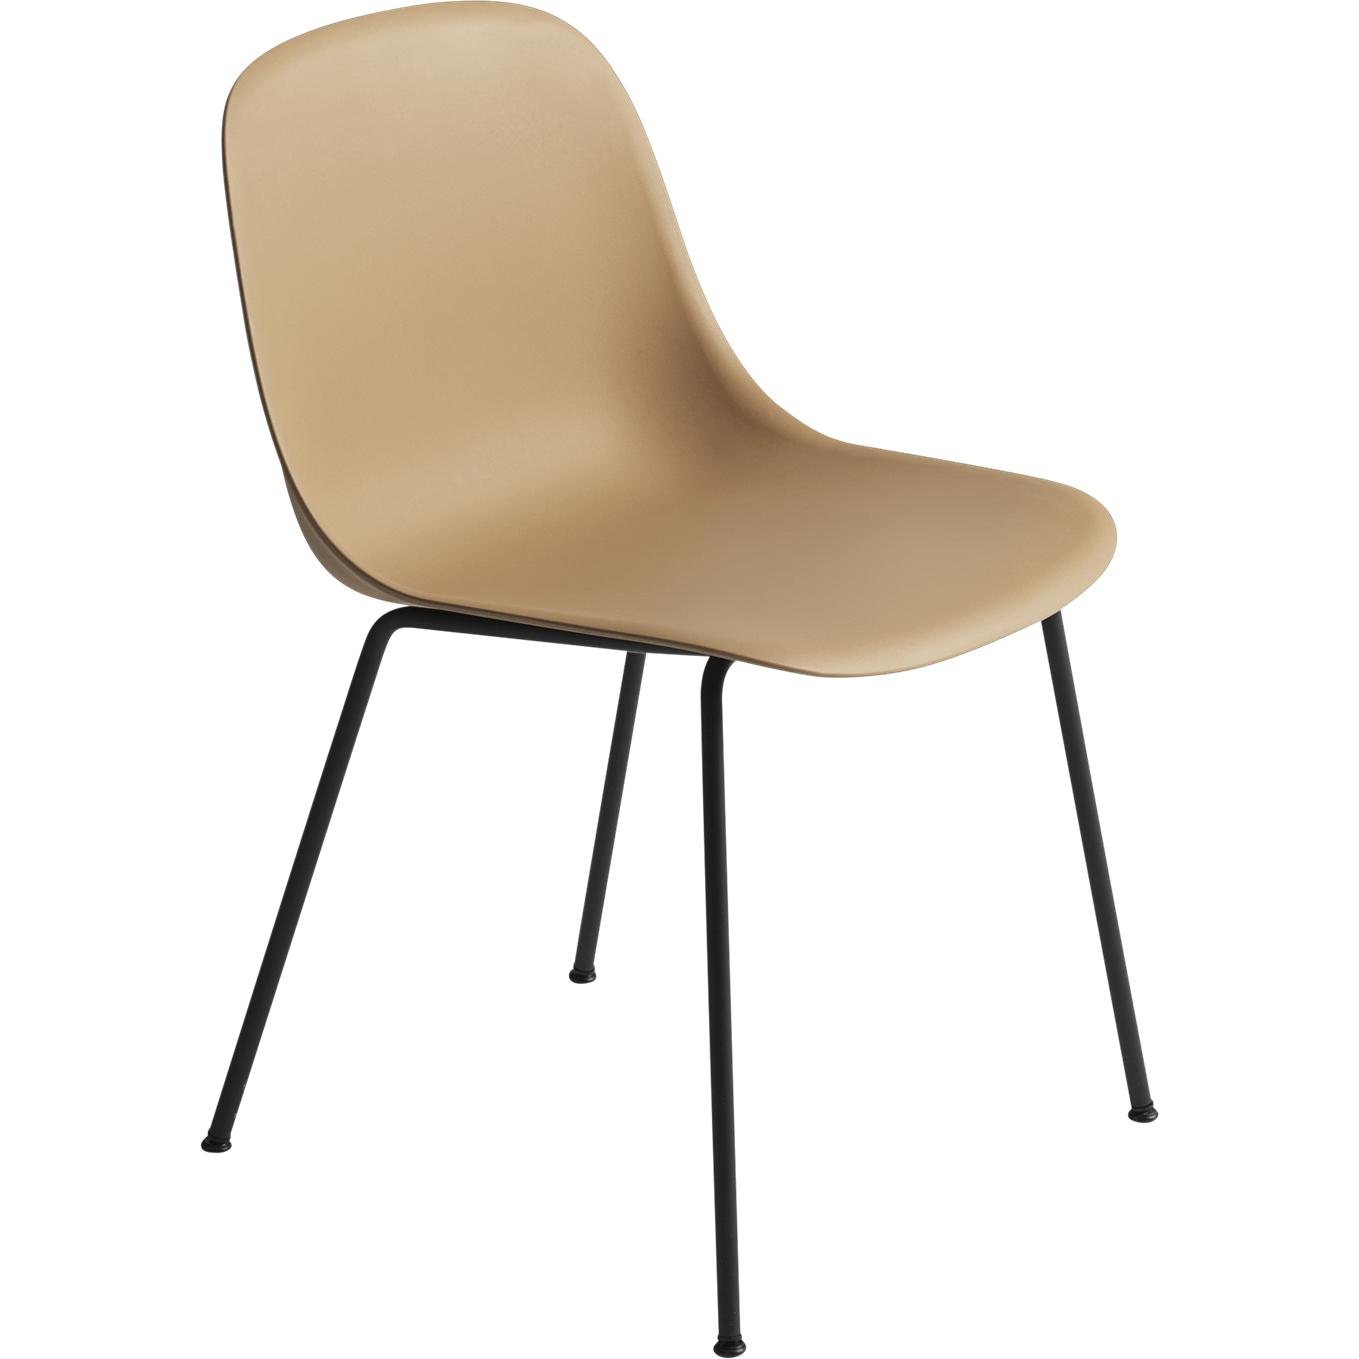 Base de tubo de silla lateral de fibra muuto, asiento de fibra, marrón/negro